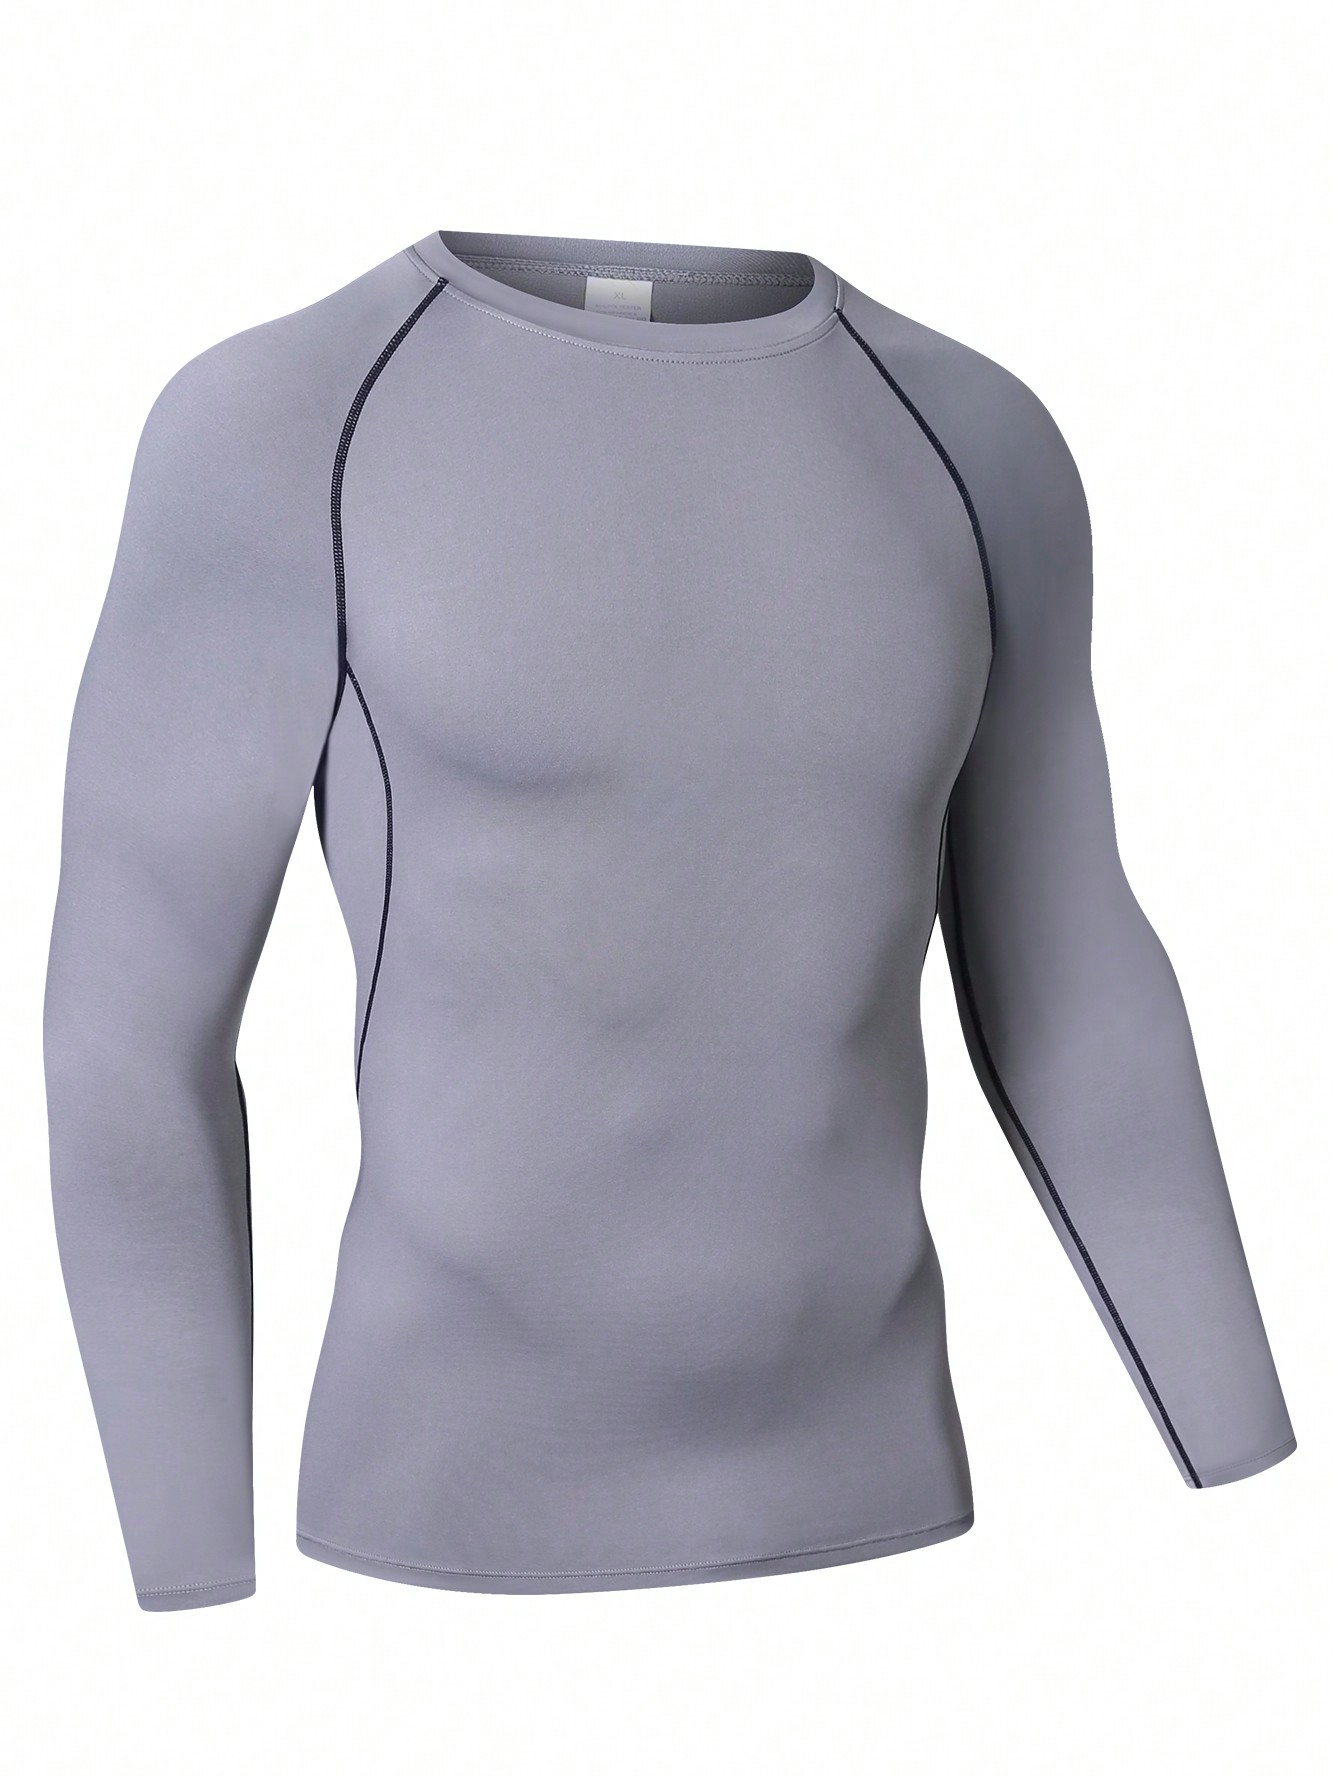 Мужская эластичная компрессионная рубашка для фитнеса с длинными рукавами, серый мужская футболка для бега бега быстросохнущая компрессионная облегающая футболка для фитнеса тренажерного зала футбола мужская футбол